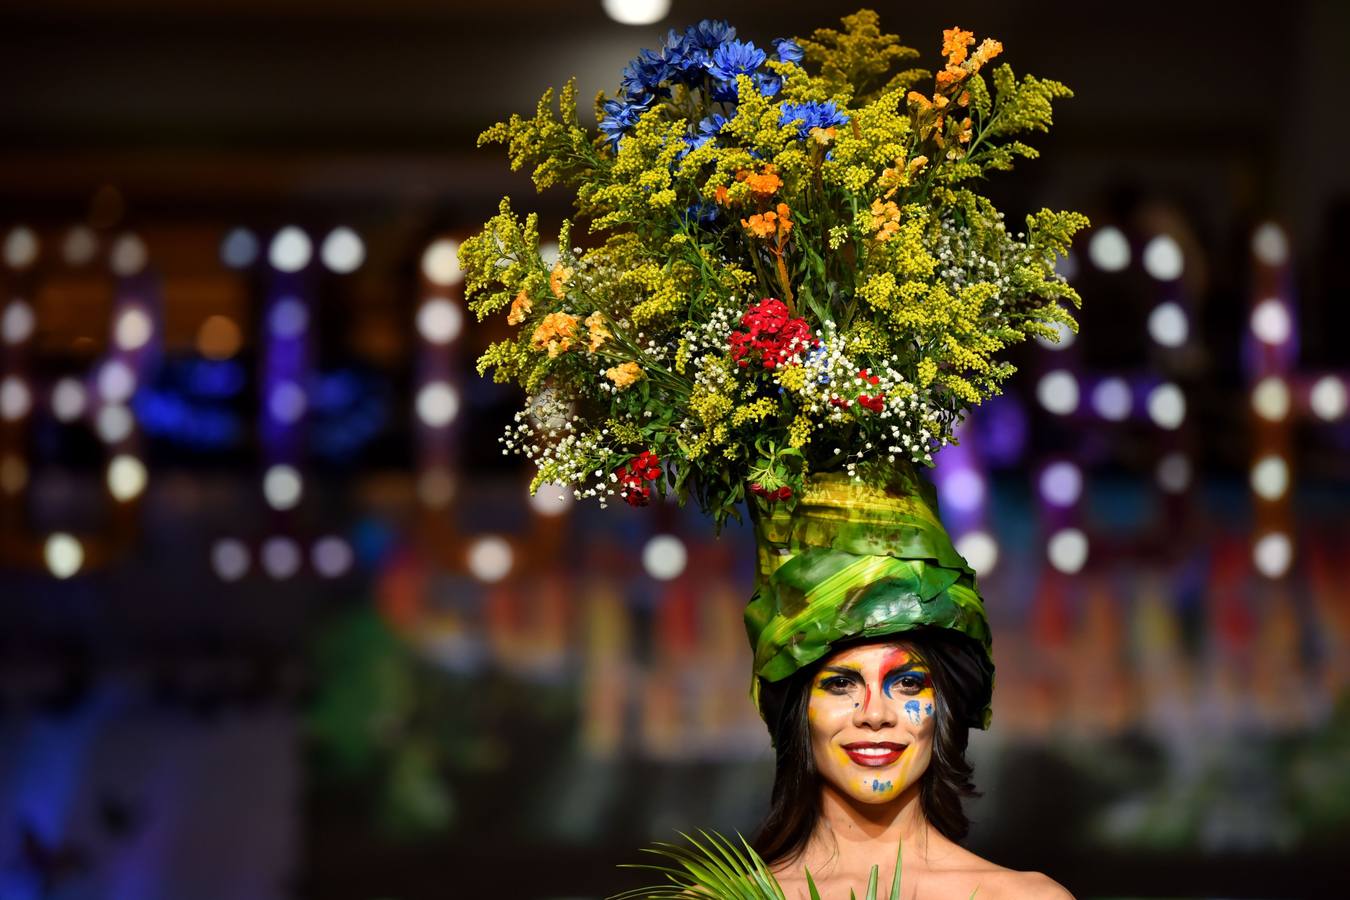 Varias modelos desfilan con diseños hechos con elementos de la naturaleza vegetal durante el Biofashion 2018, en Cali (Colombia). El Biofashion busca resaltar desde lo ecológico toda la belleza de la naturaleza, trasladando a la pasarela, follajes, hojas y elementos naturales que renacen en espectaculares diseños de moda. 